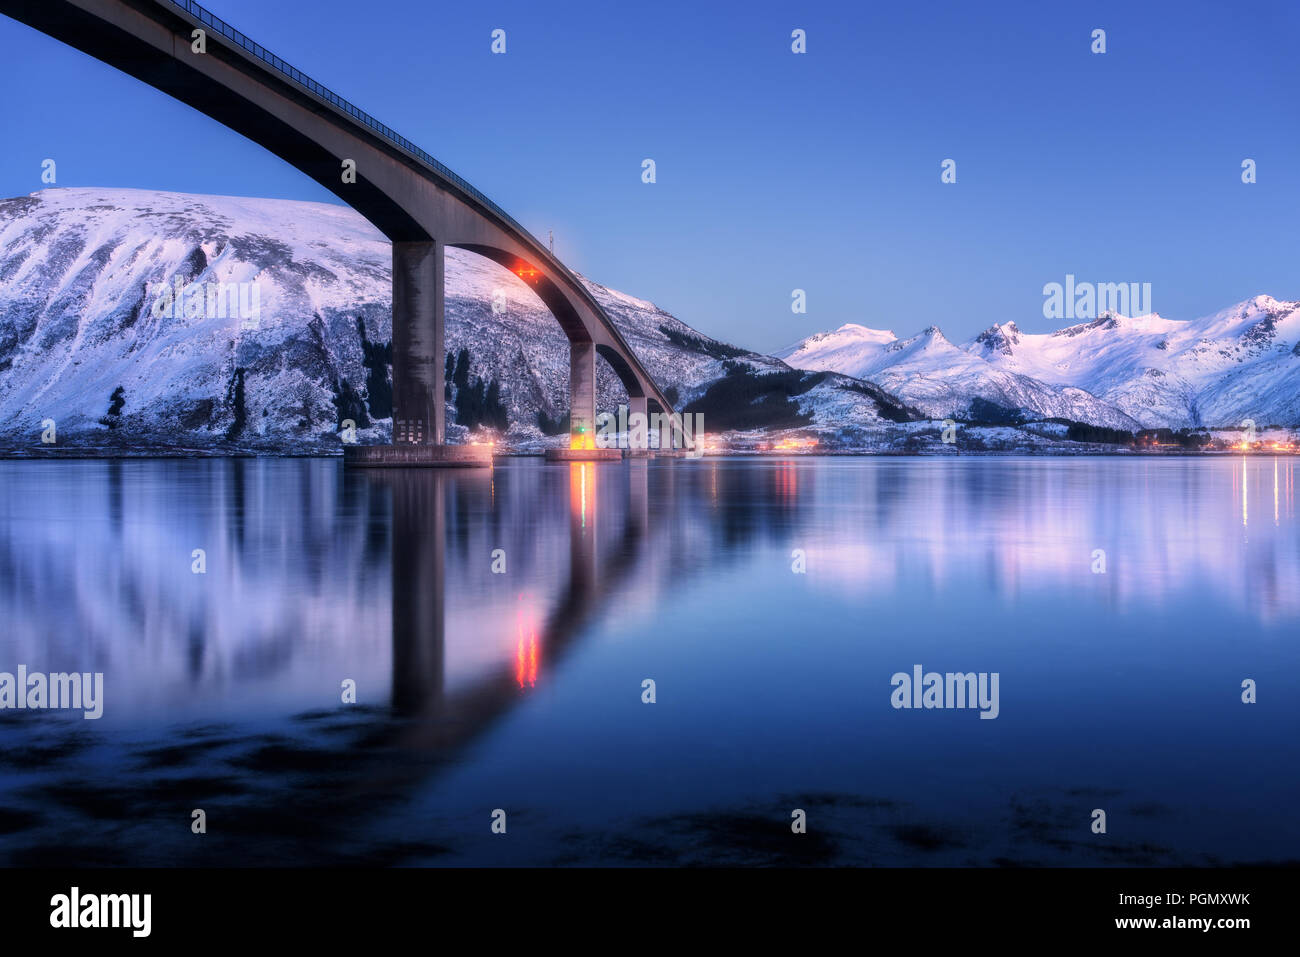 Brücke mit Beleuchtung, schneebedeckte Berge, Dorf und blauer Himmel mit wunderschönen Reflexion im Wasser. Nacht Landschaft mit Brücke, verschneite Felsen re Stockfoto